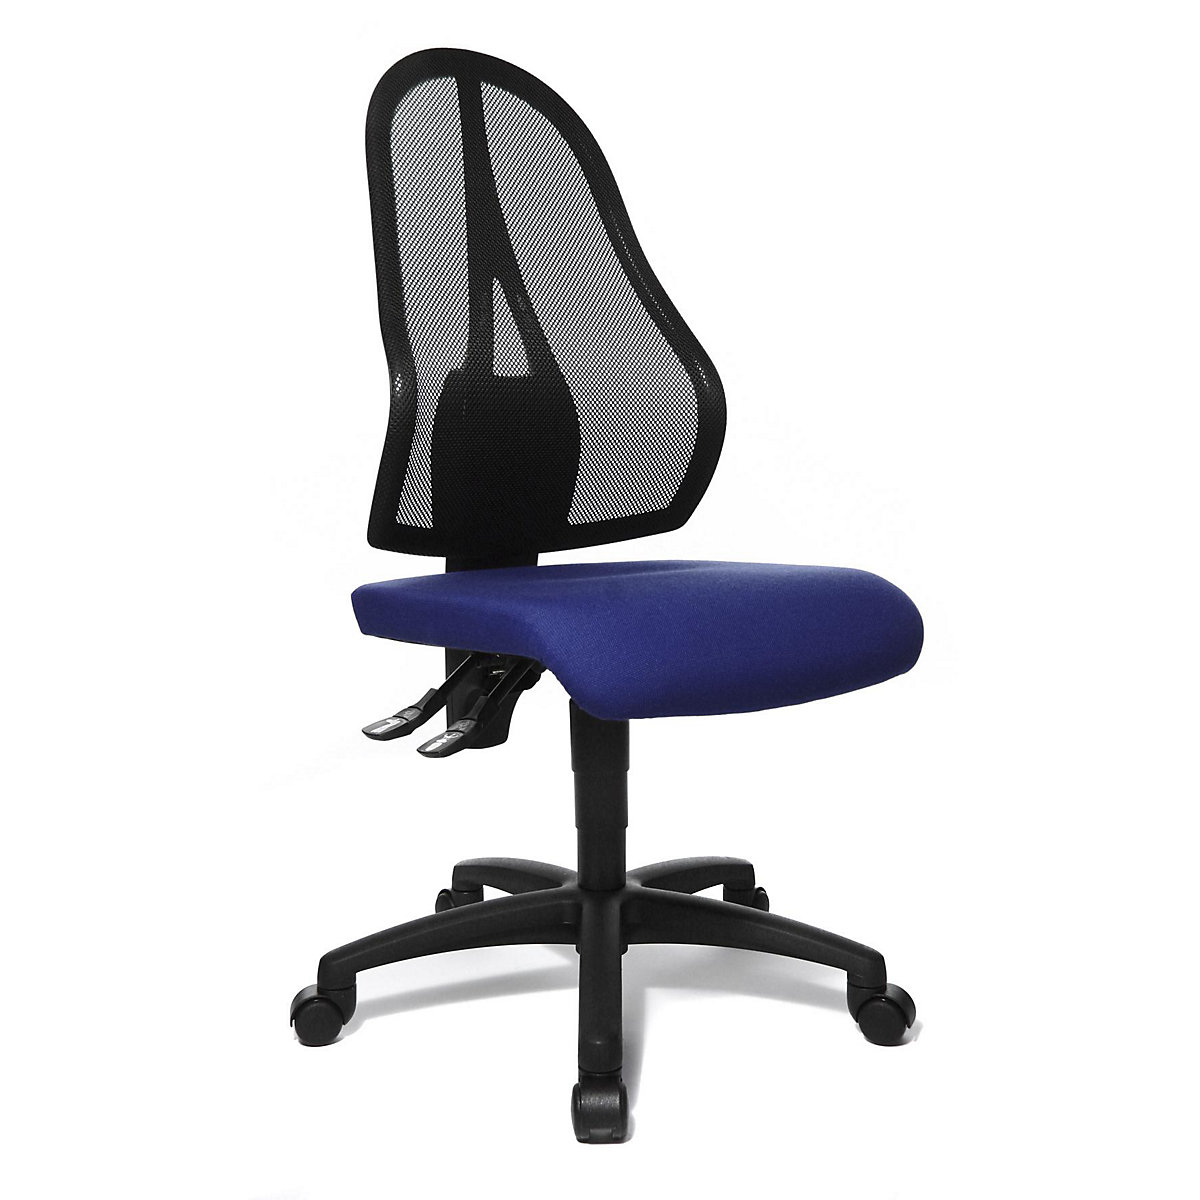 Cadeira giratória de escritório OPEN POINT P – Topstar, encosto em rede preta, sem apoios para braços, forro azul royal-4